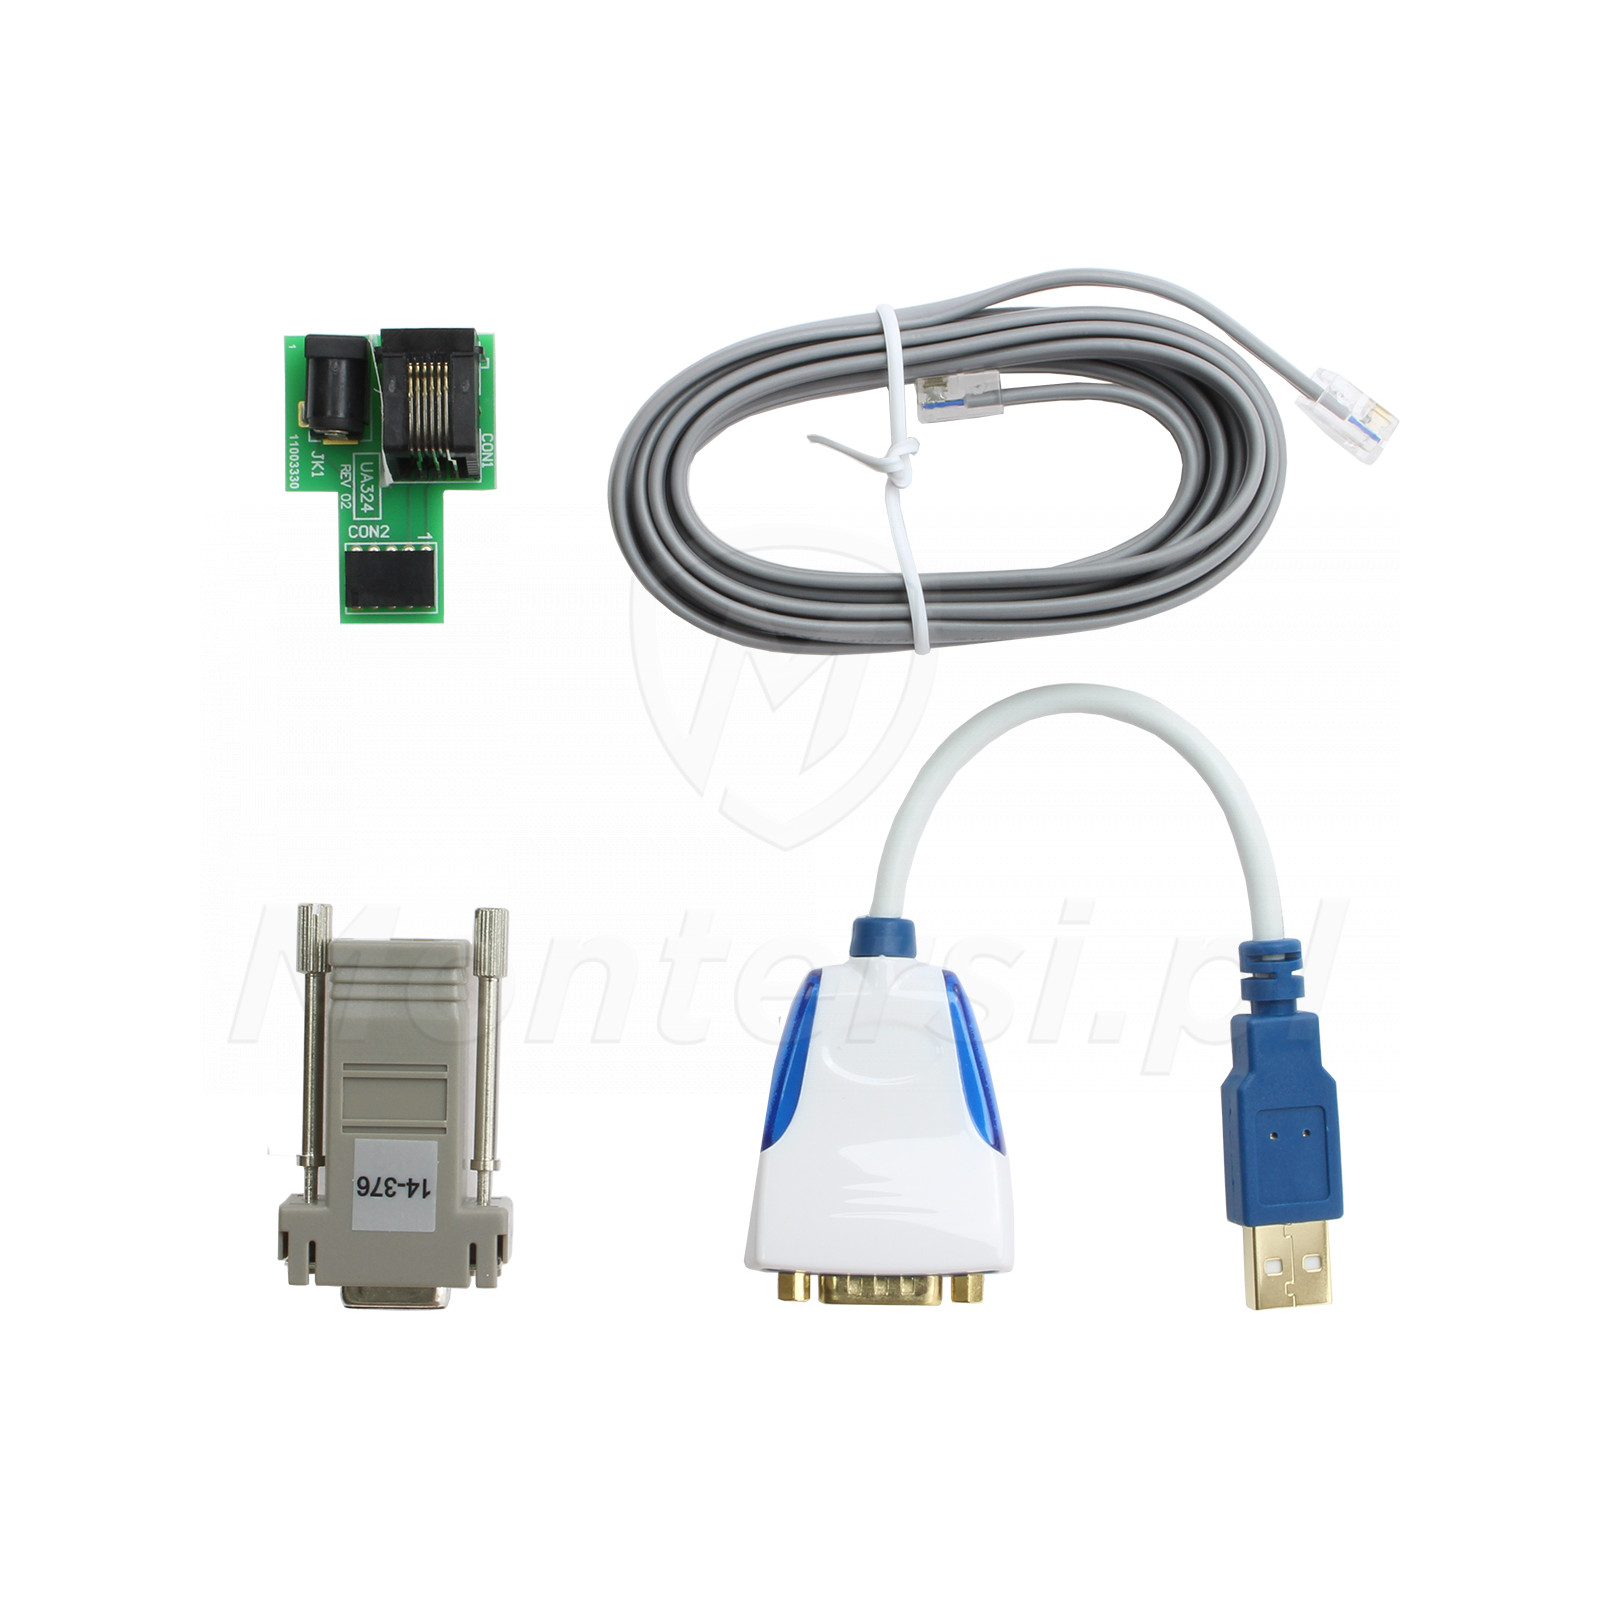 PCLINK-5WP USB - Interfejs usb do programowania